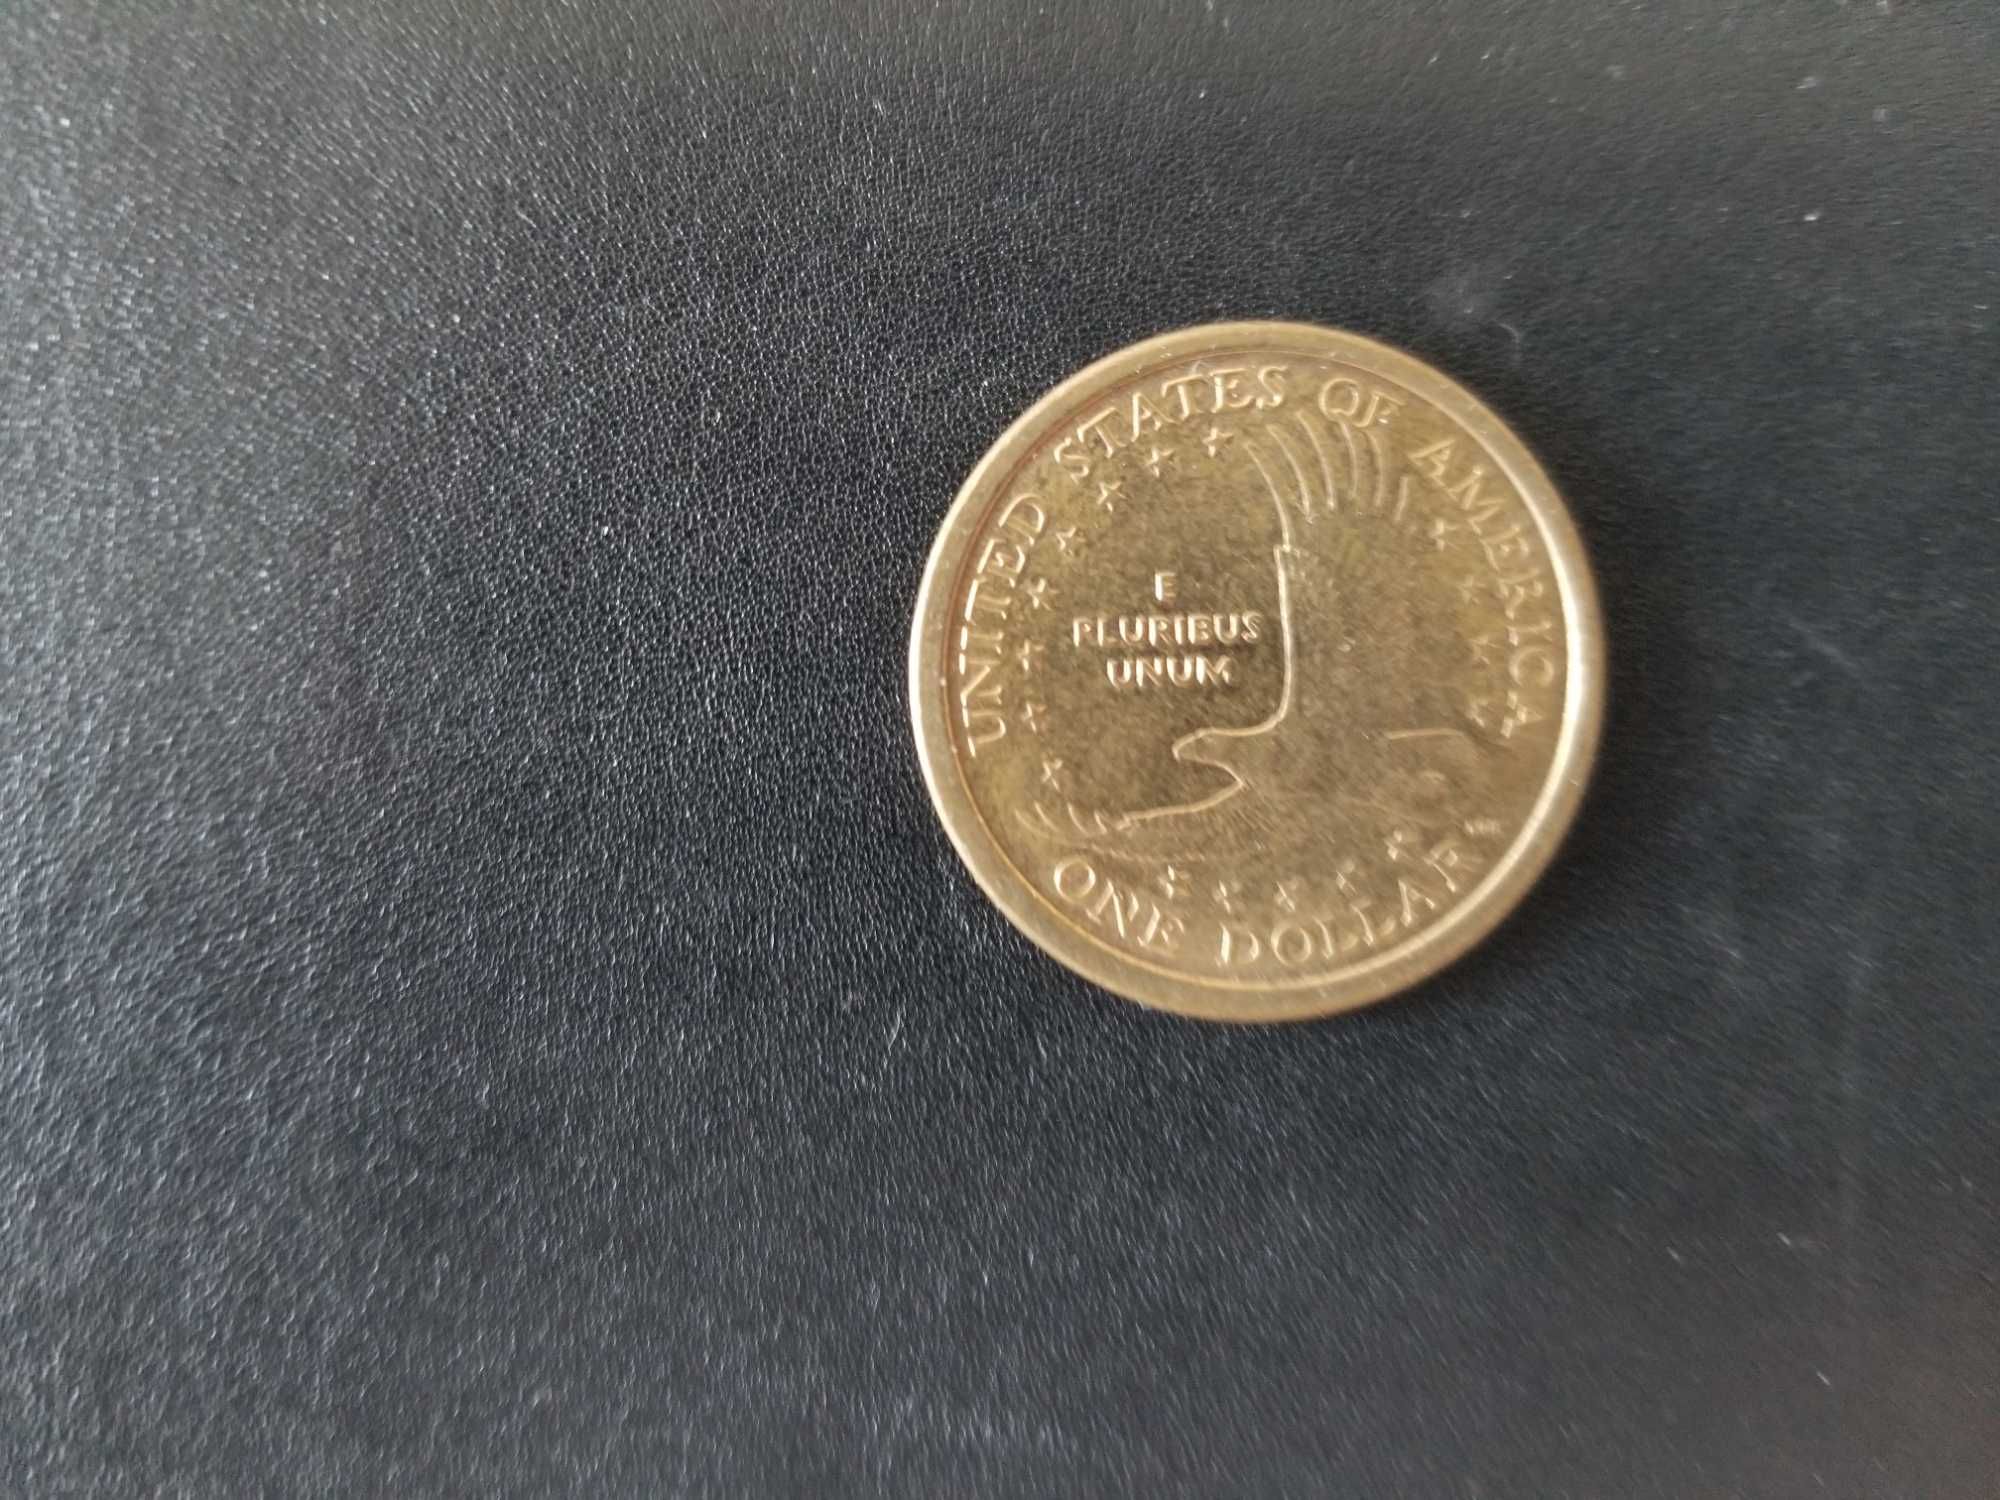 Един долар монета US LIBERTY 2000-P Sacagawea Gold Color Circulated